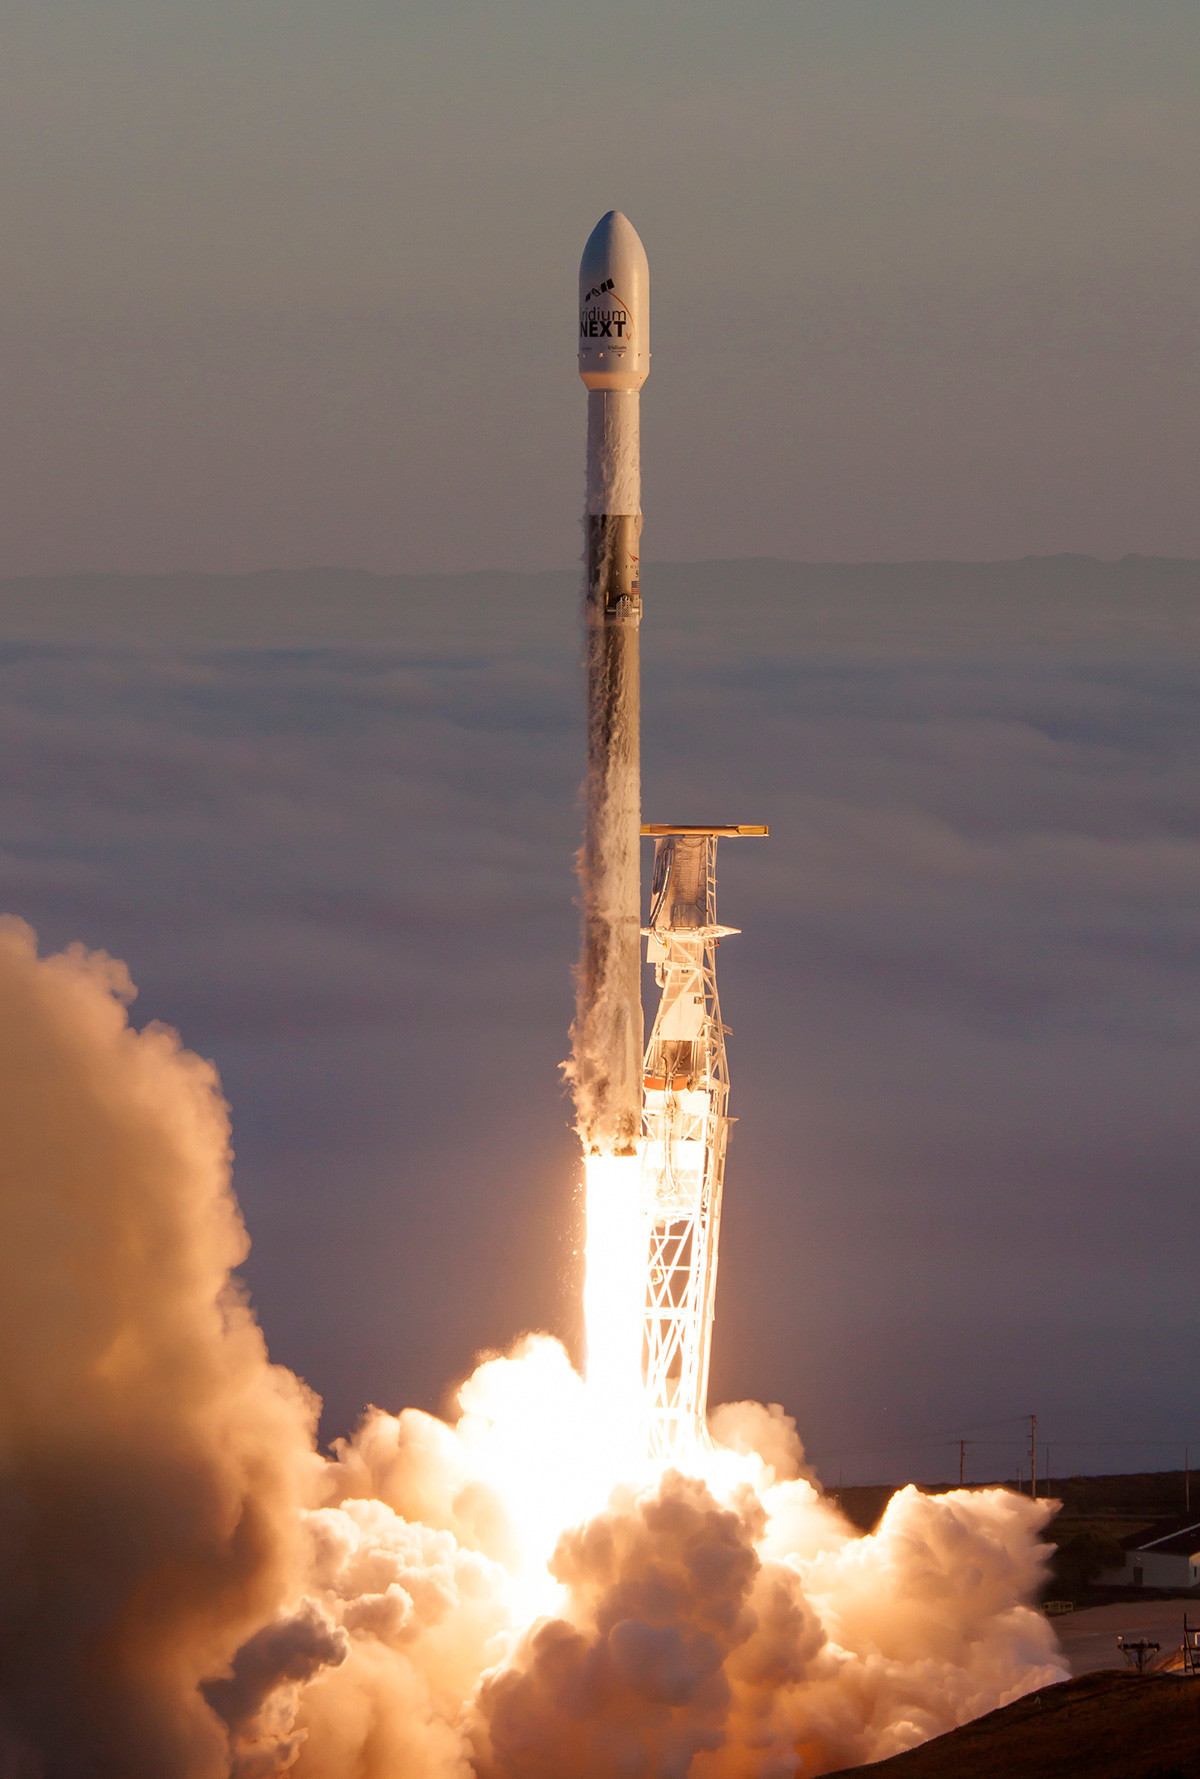 Ameriška raketa Falcon 9 z desetimi komunikacijskimi sateliti tipa Iridium NEXT med izstrelitvijo s kozmodroma Vandenberg v Kaliforniji

